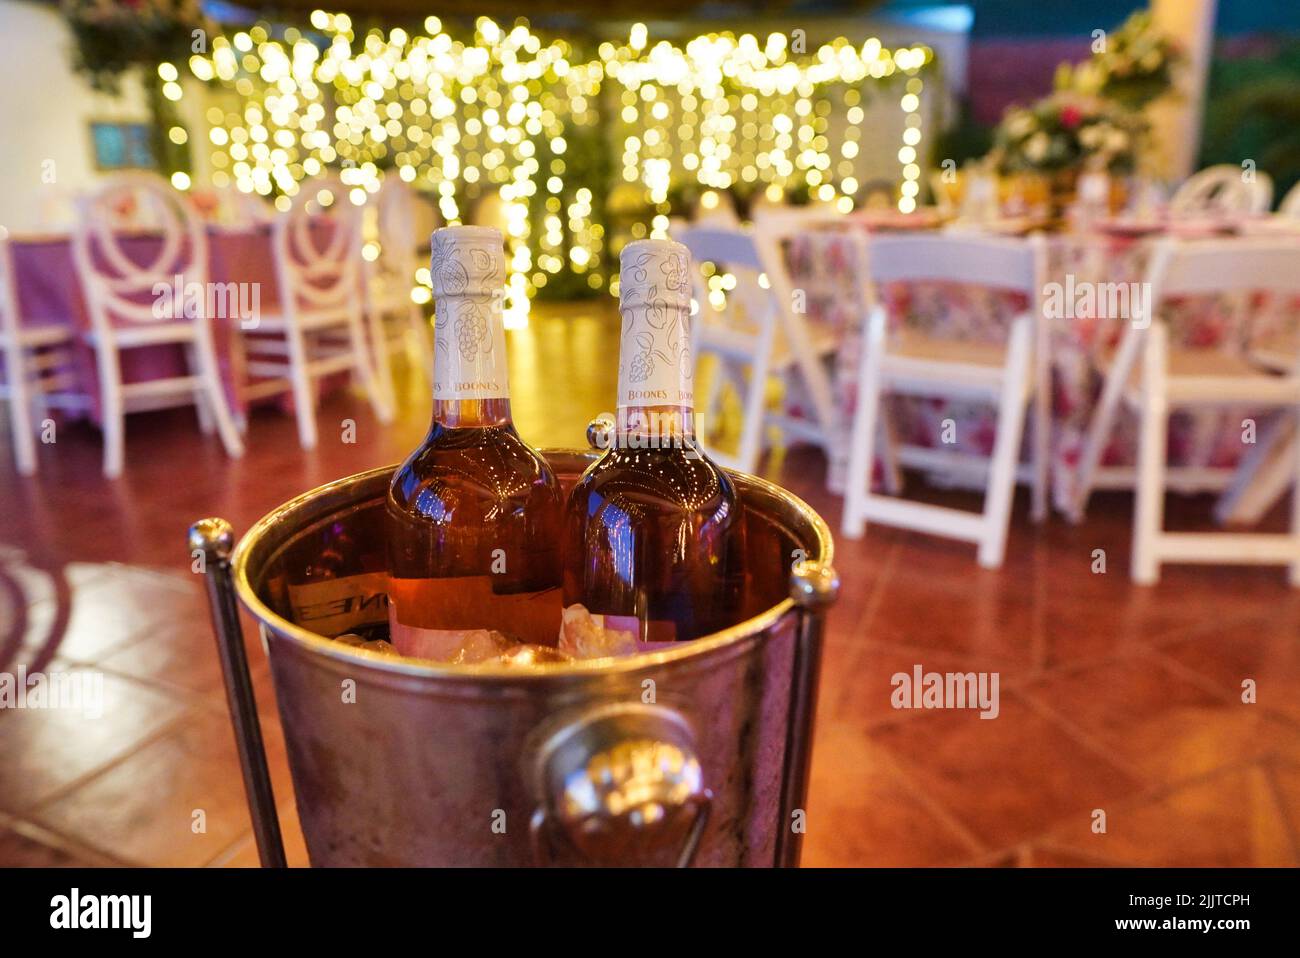 Un gros plan de 2 bouteilles de vin dans un seau à glace lors d'une réception de mariage Banque D'Images